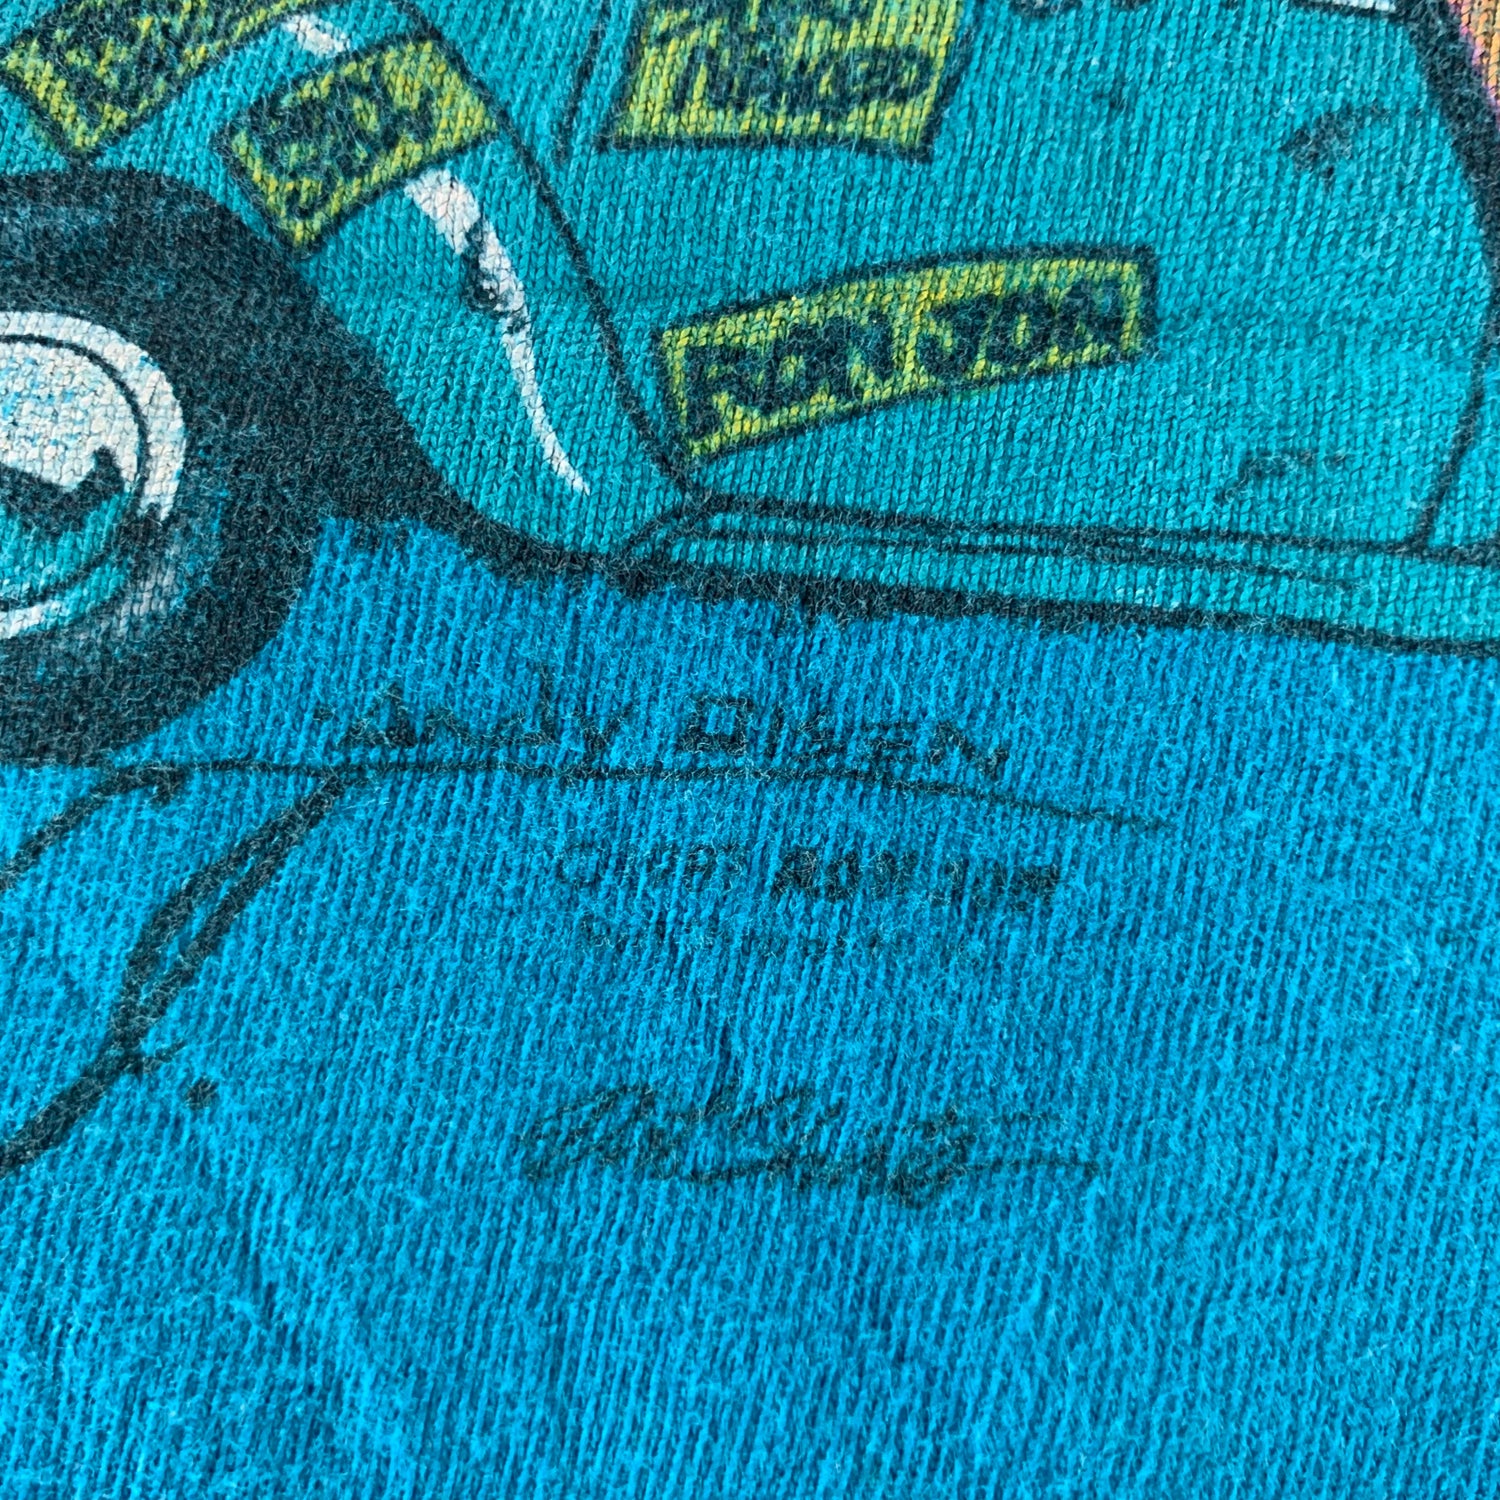 Vintage 1987 Ron Jon Surf Shop T-shirt size Large